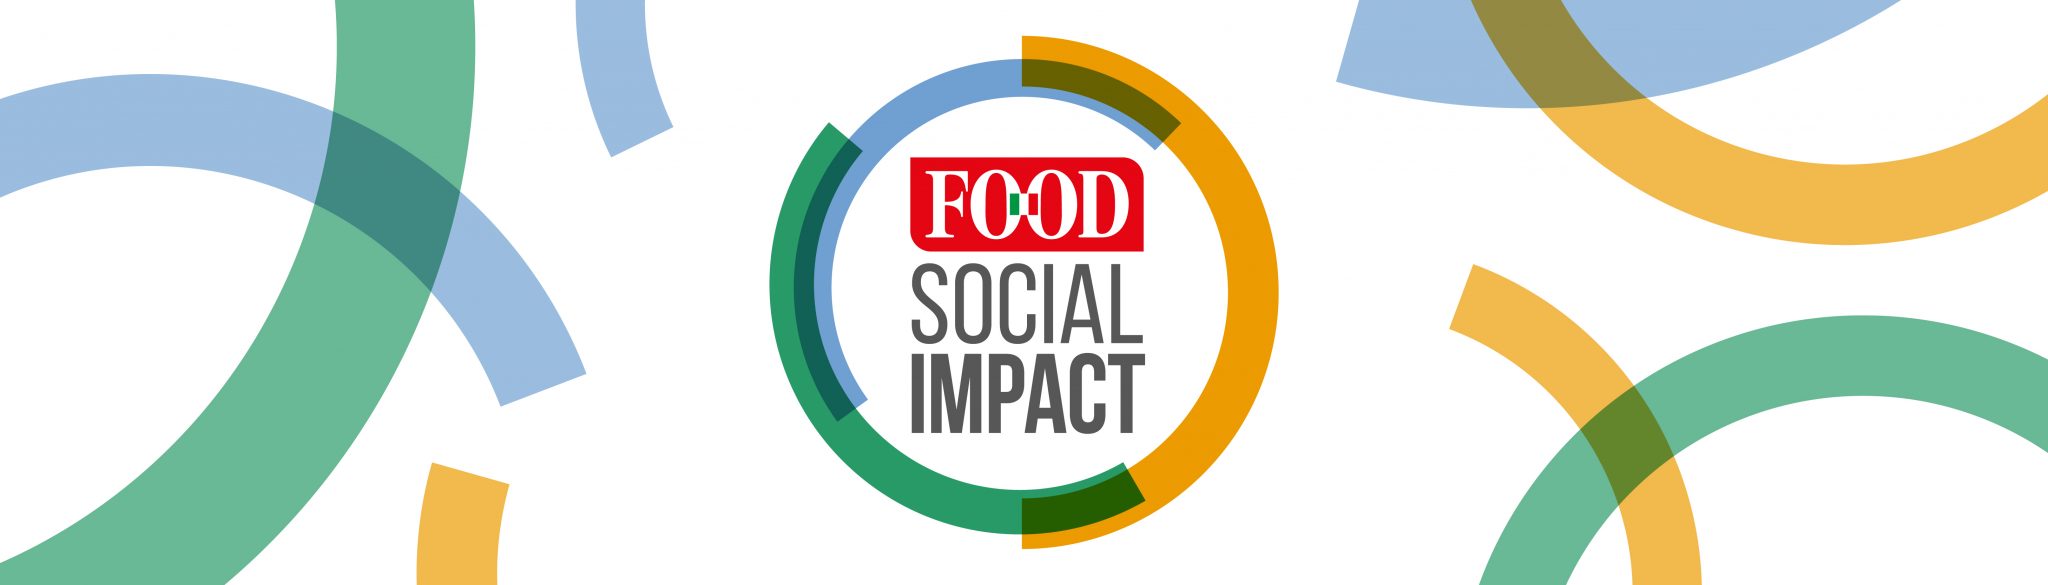 FOOD SOCIAL IMPACT